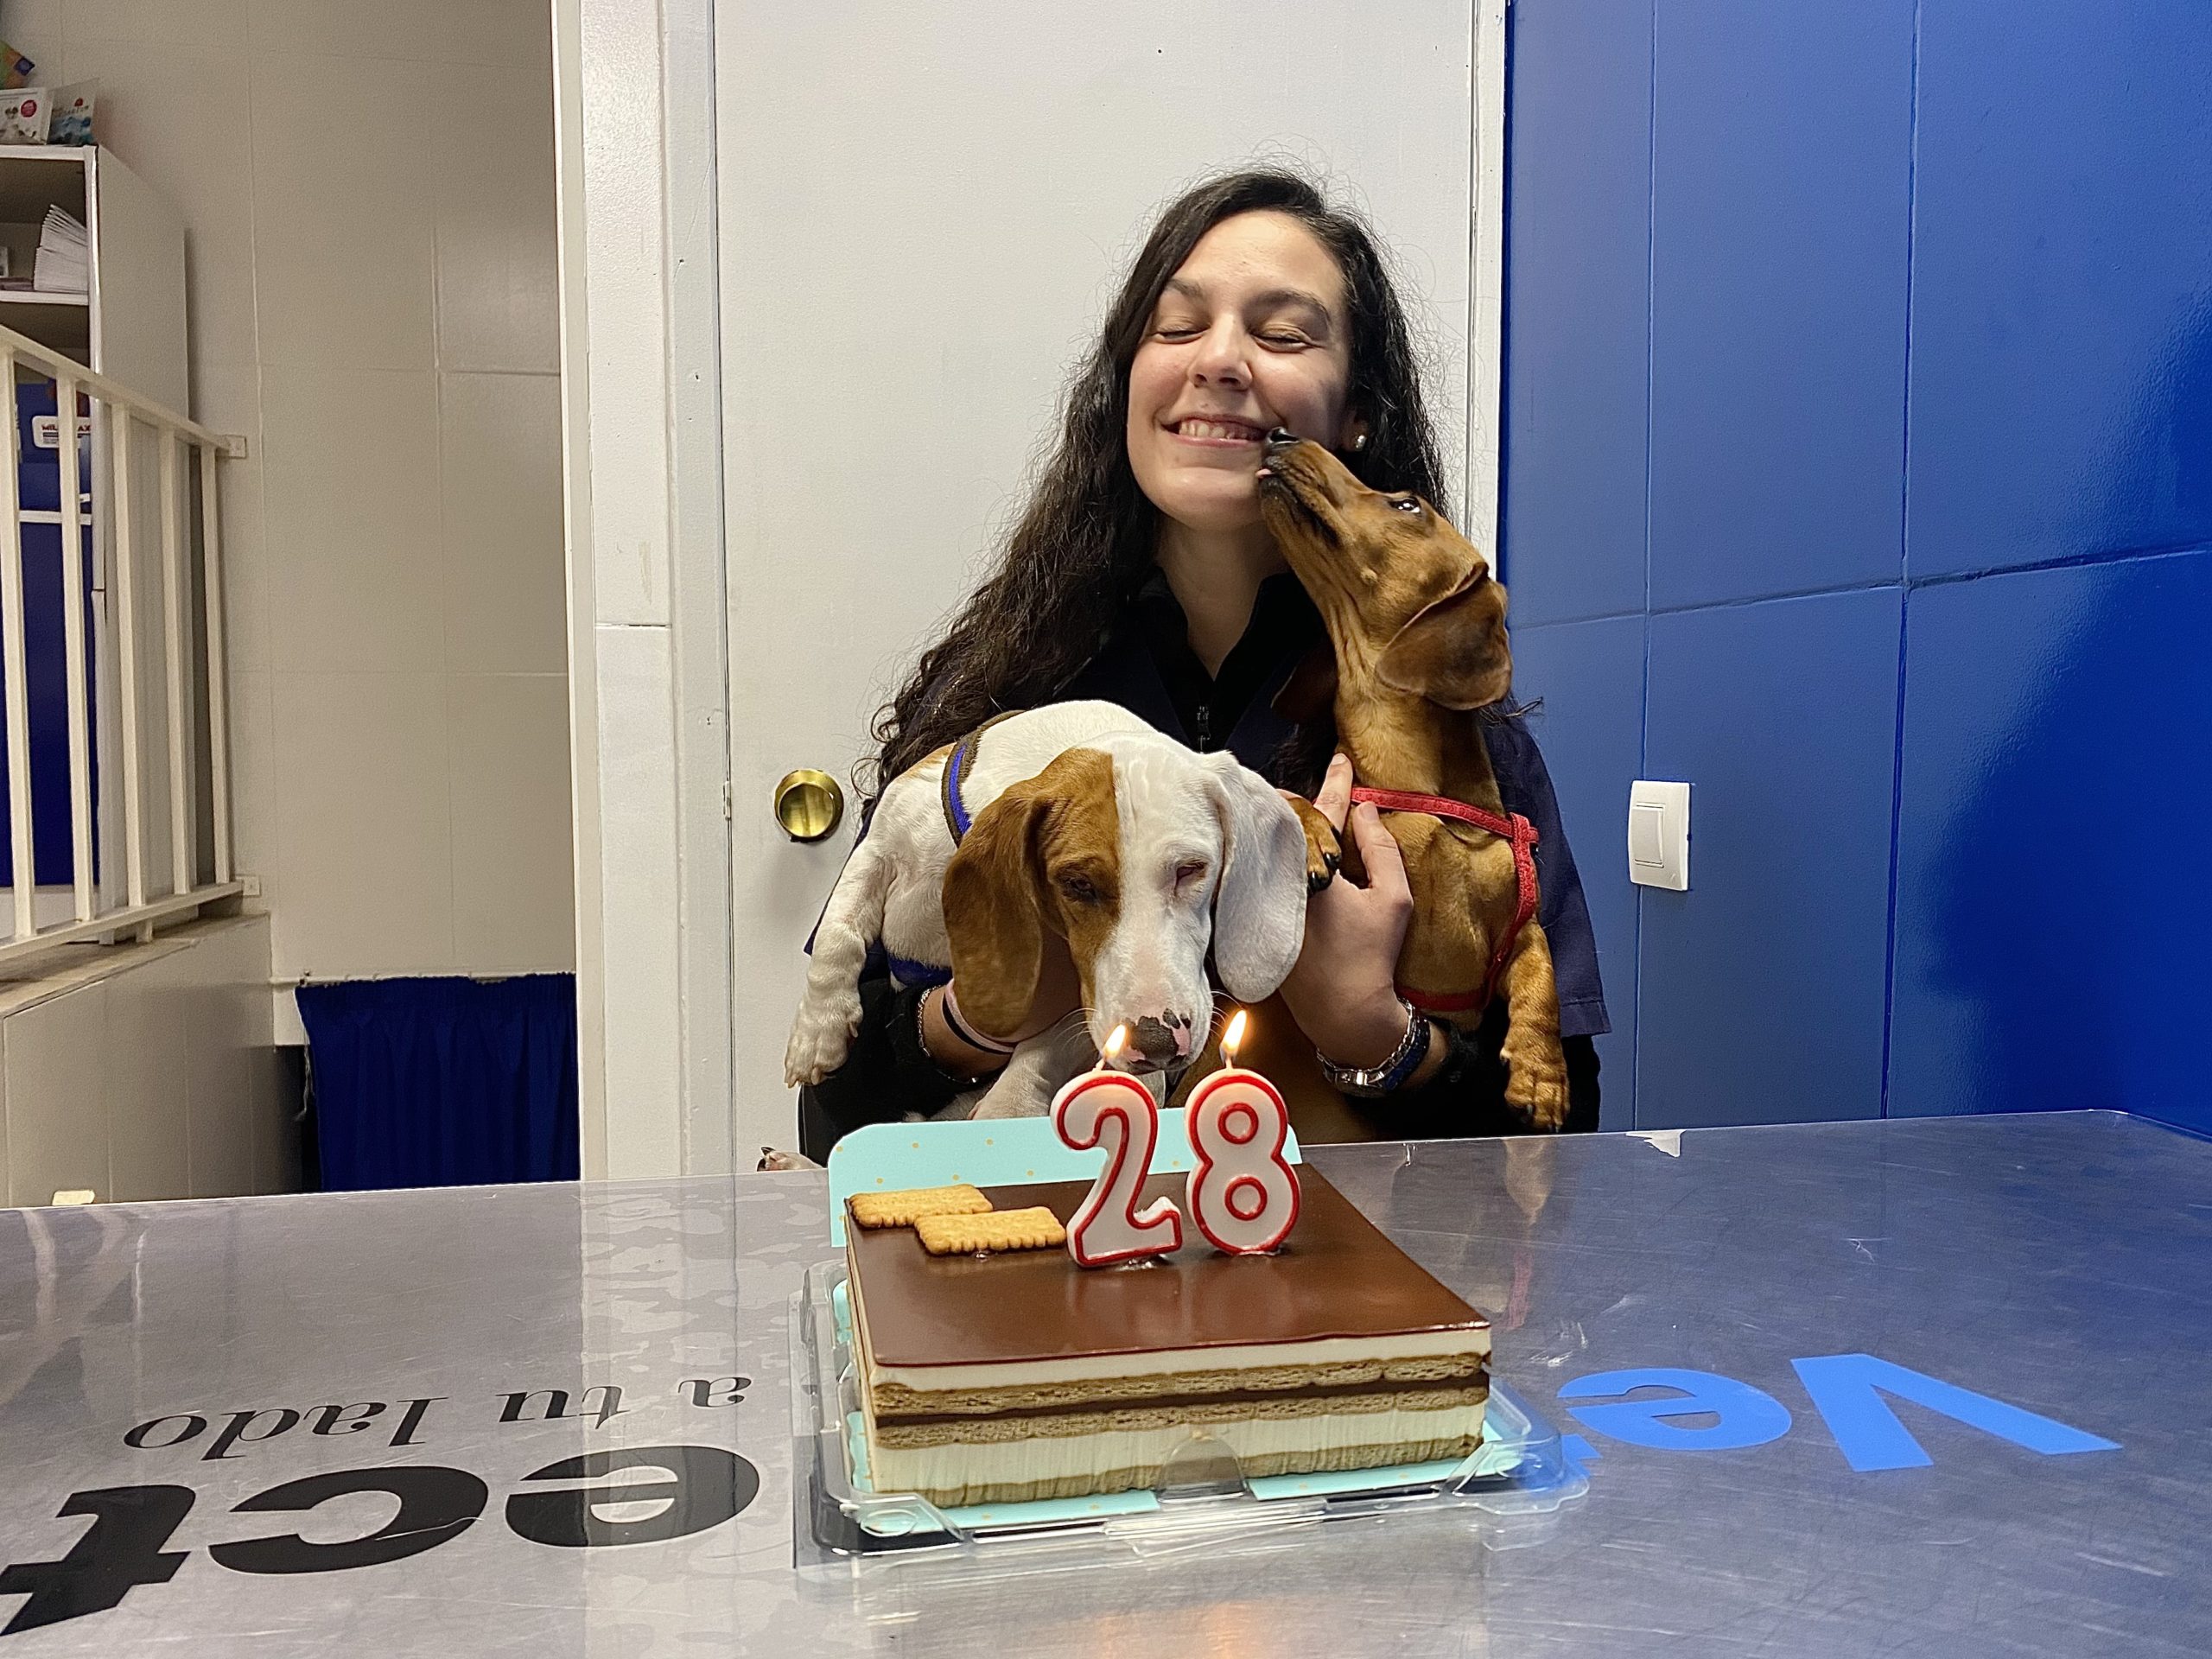 Celebrando el cumpleaños de nuestra veterinaria favorita